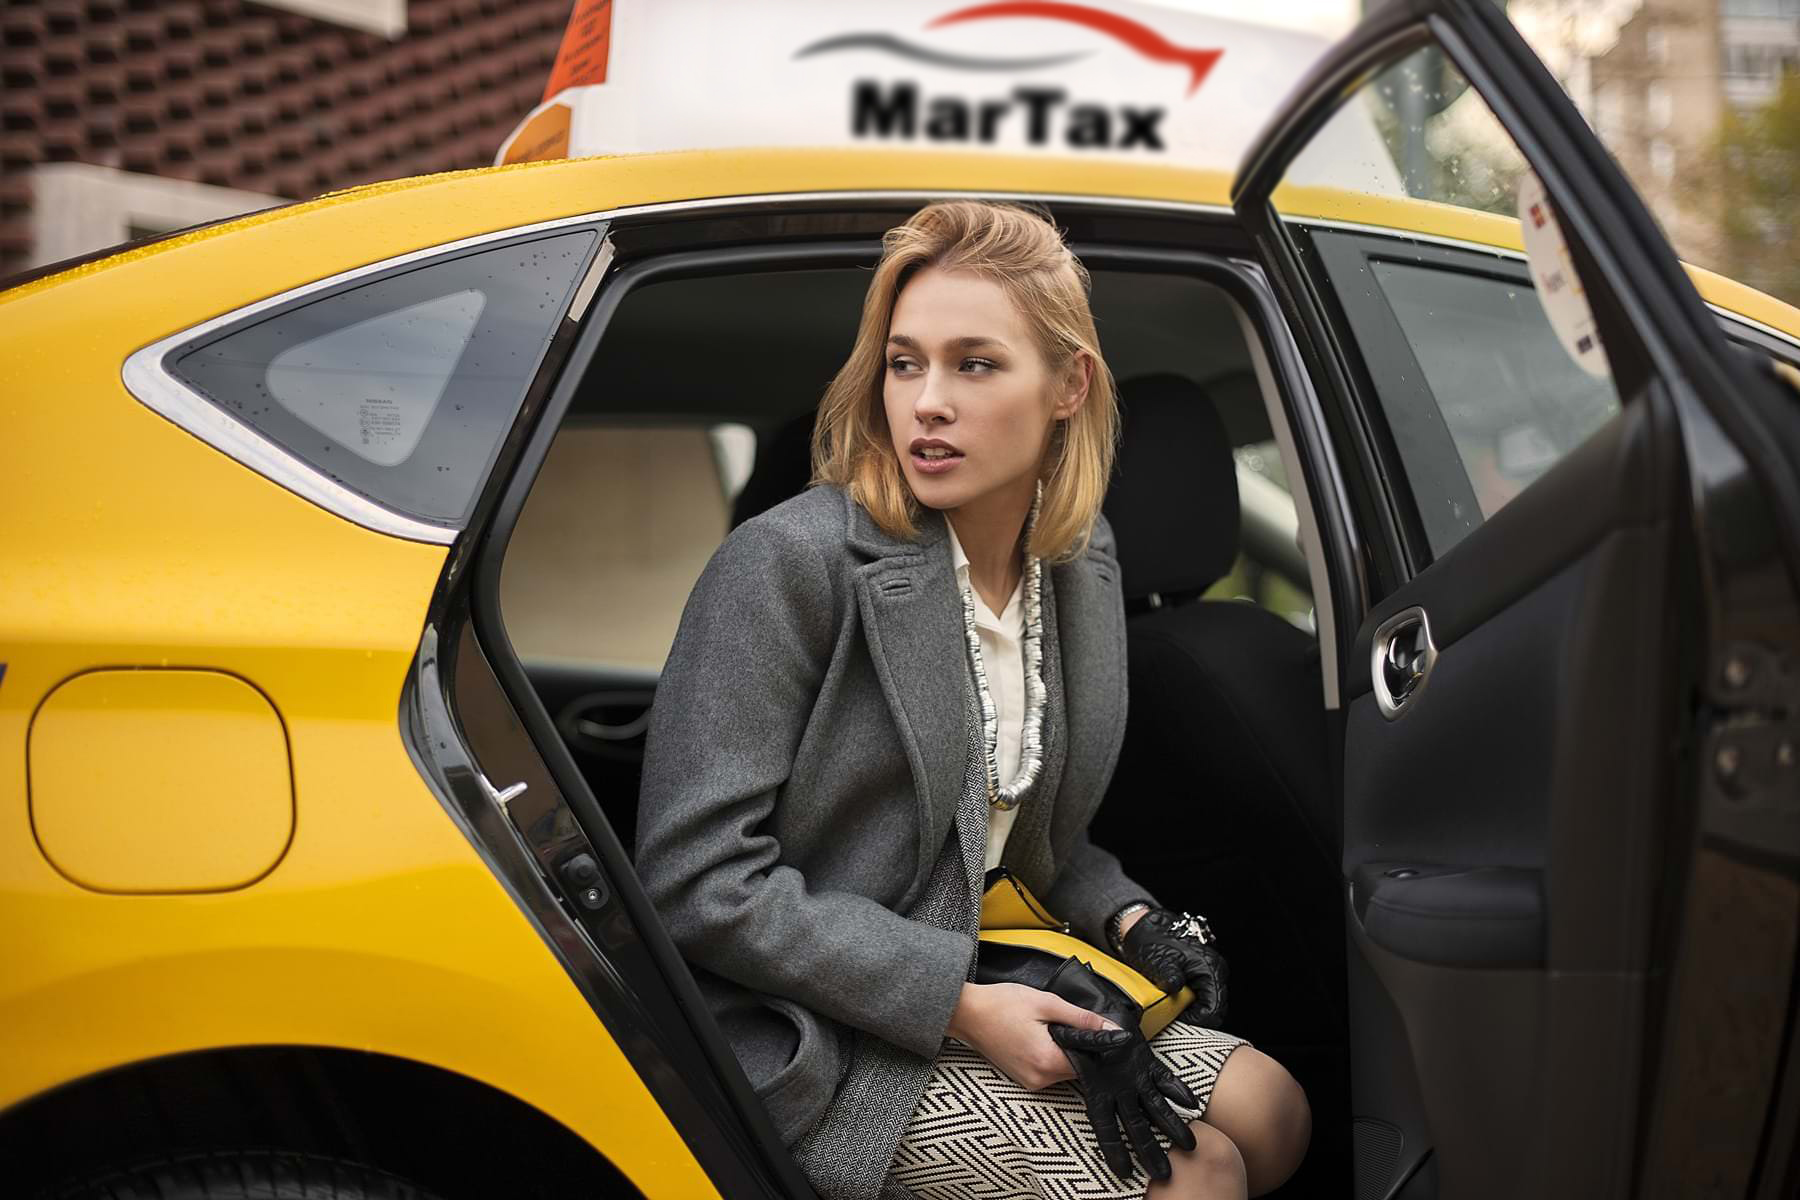 Яндекс такси требования к водителям